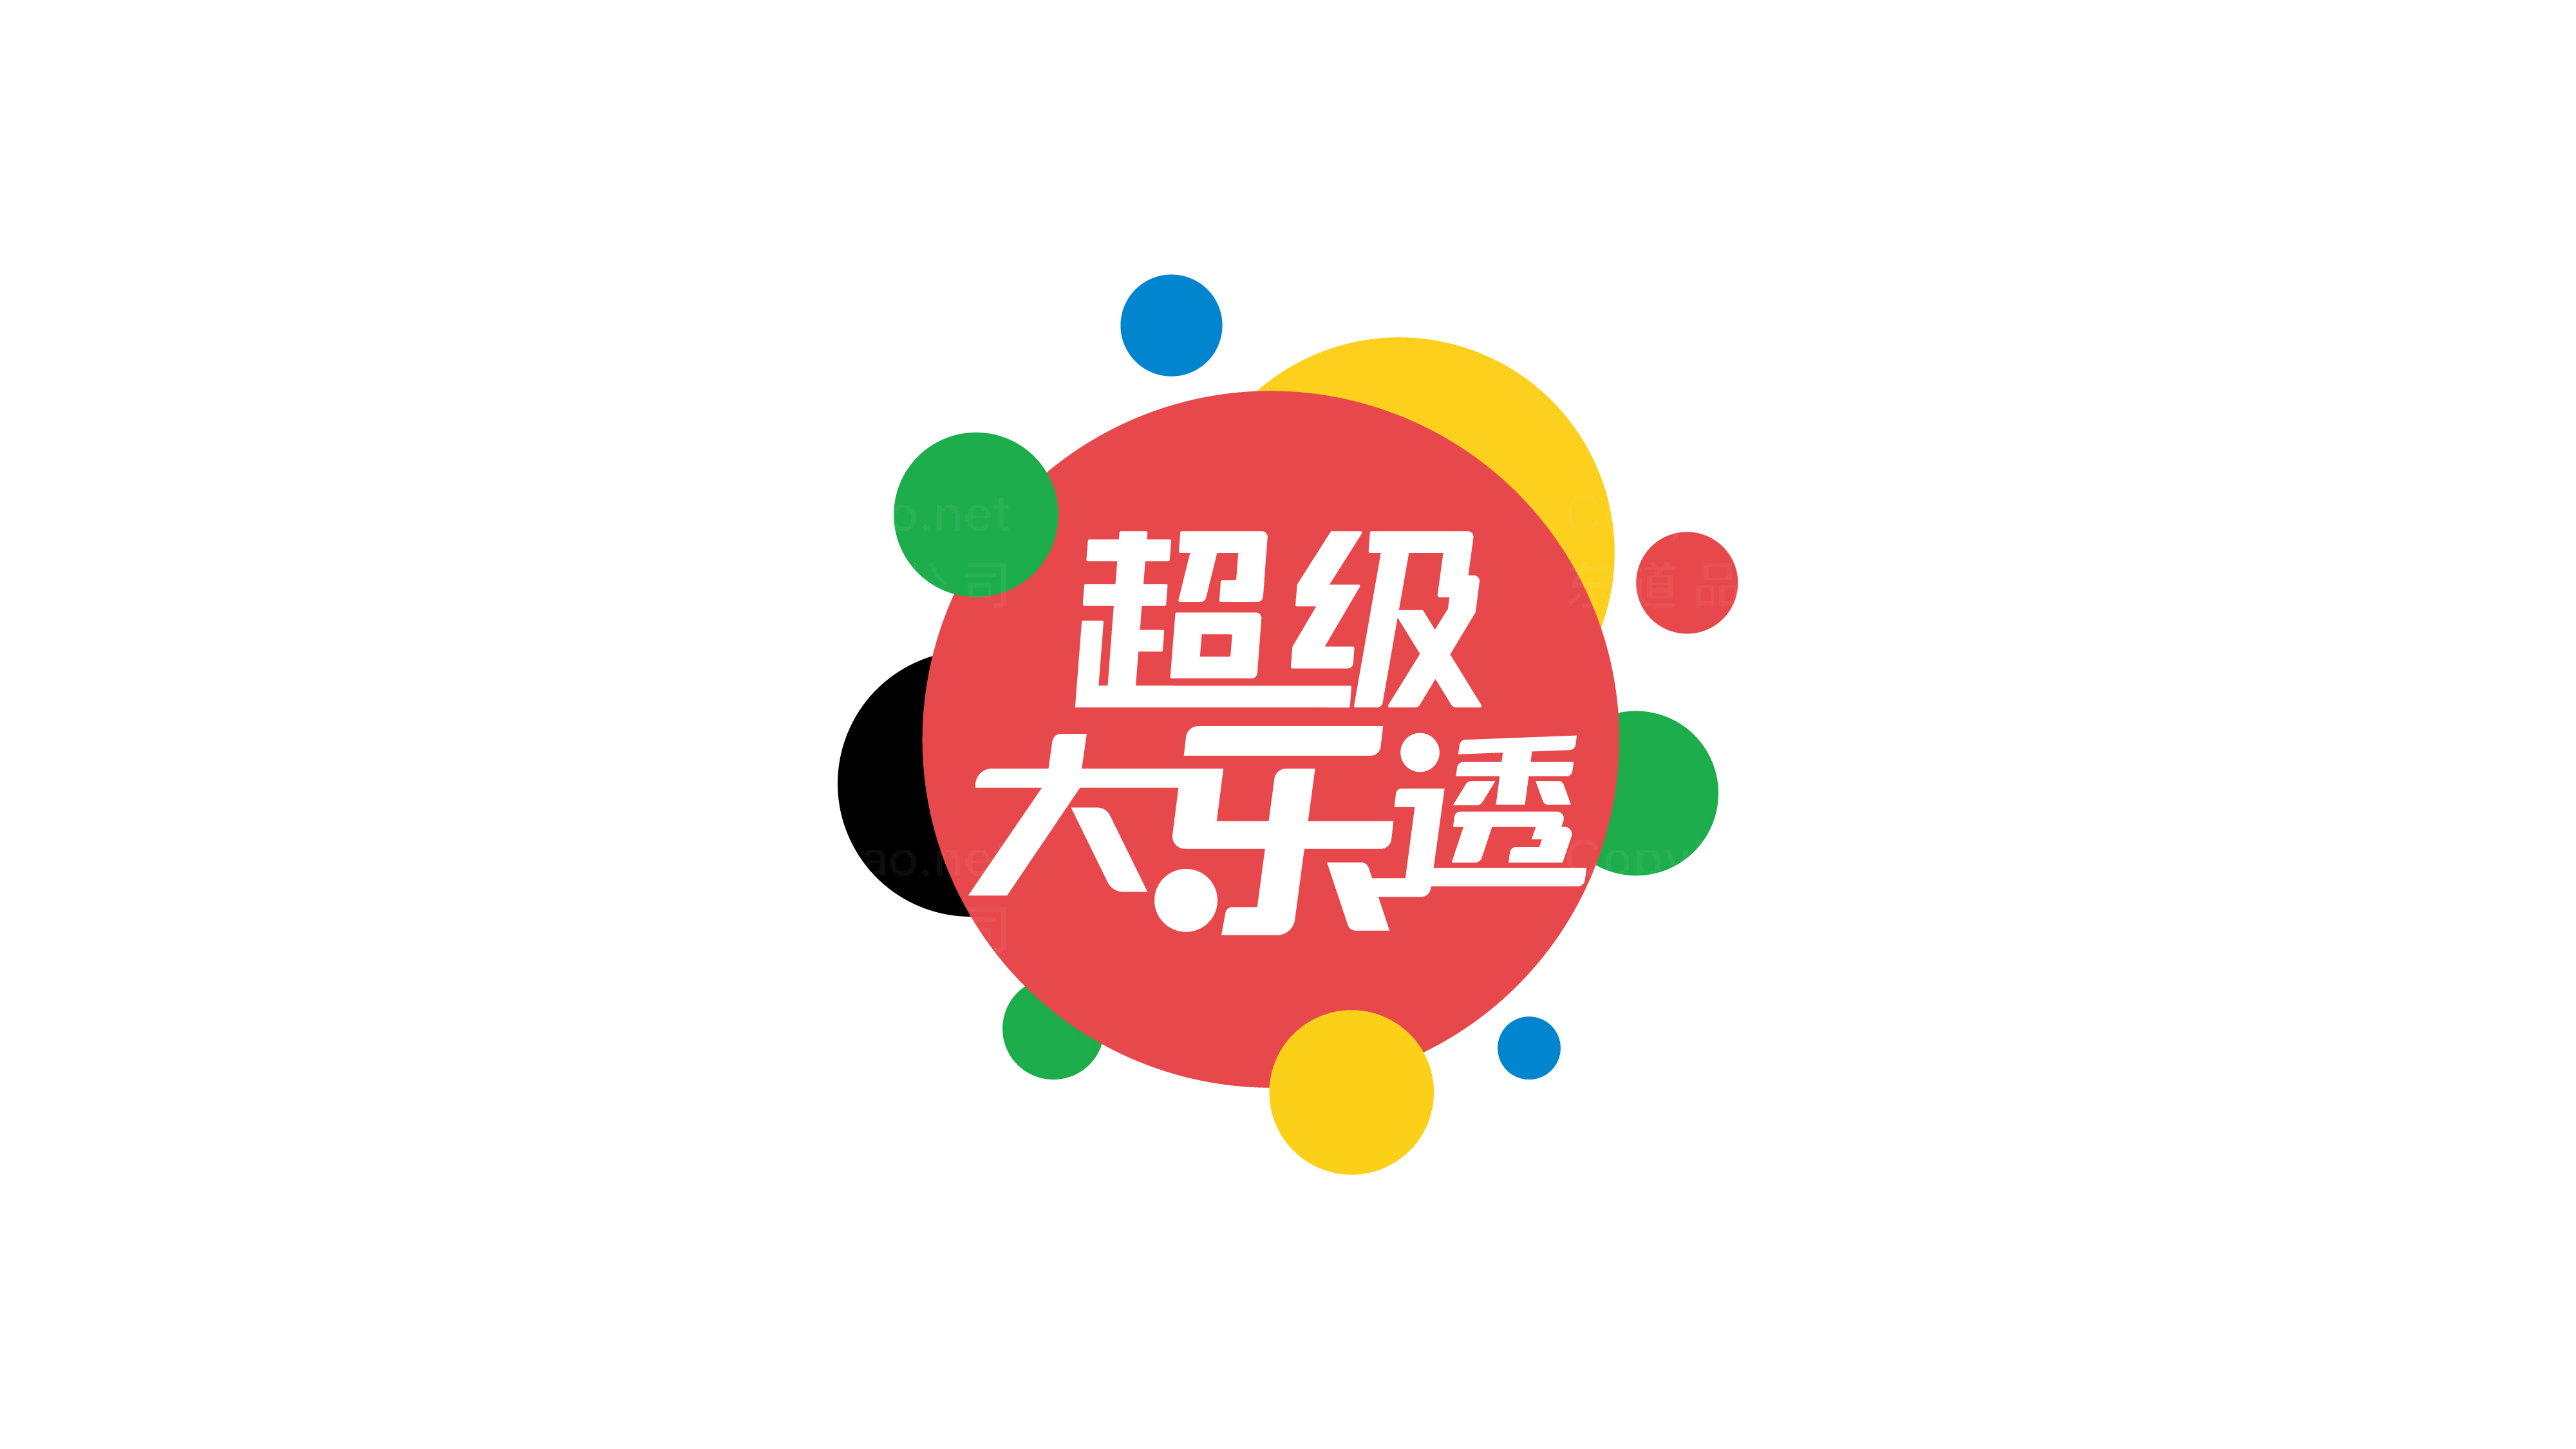 中国体育彩票vi设计图片素材大全案例欣赏